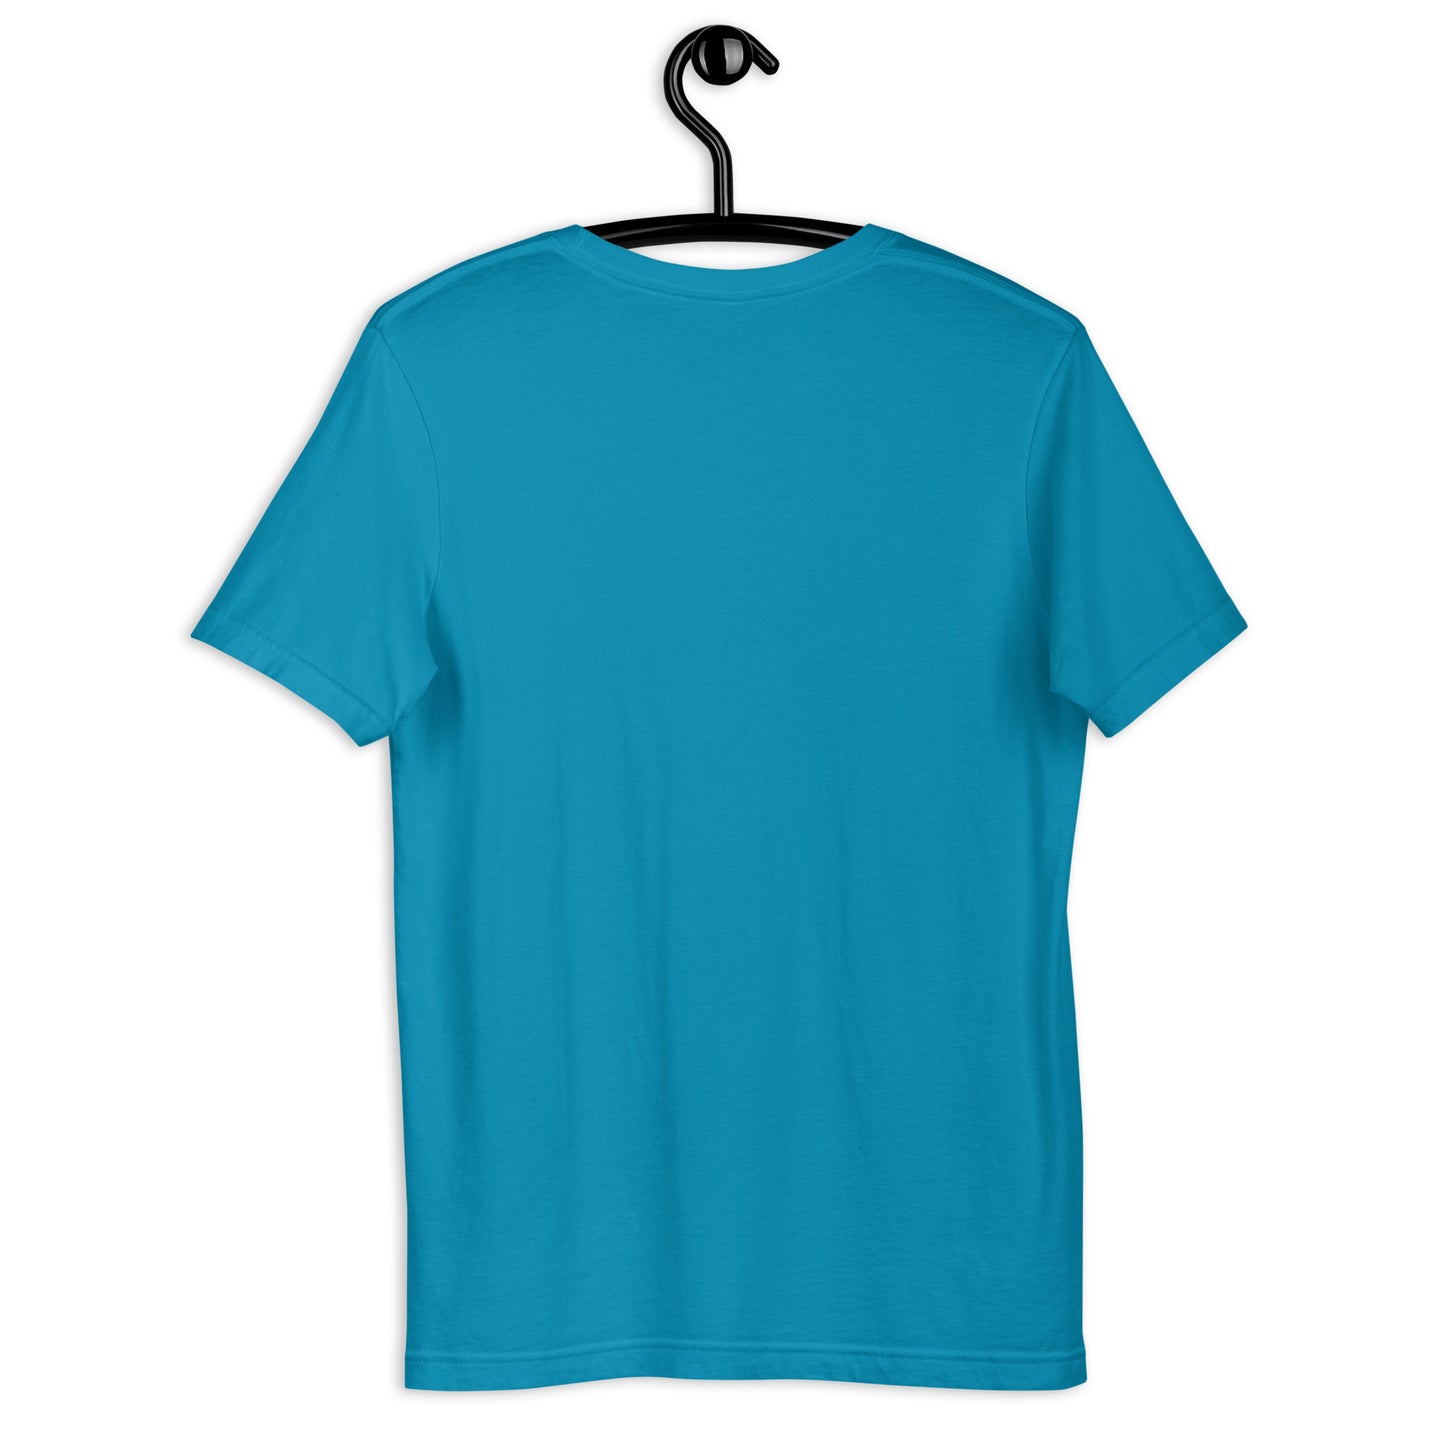 Hashem Yeshua and 3 Doves Unisex Premium t-Shirt Jesus t-shirt Christ t-shirt